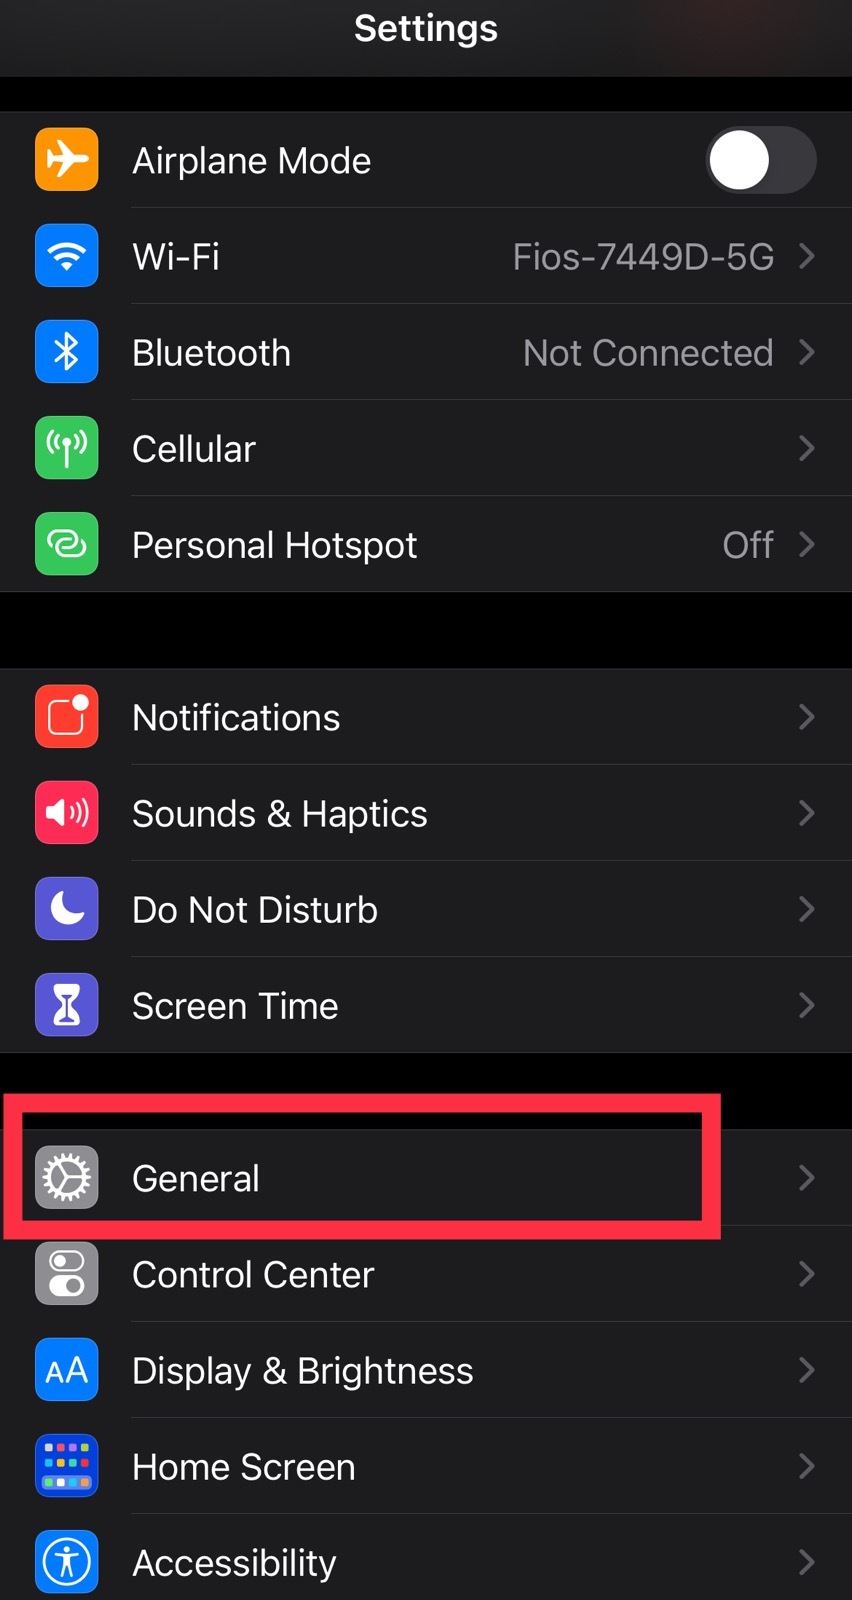 General iPhone settings